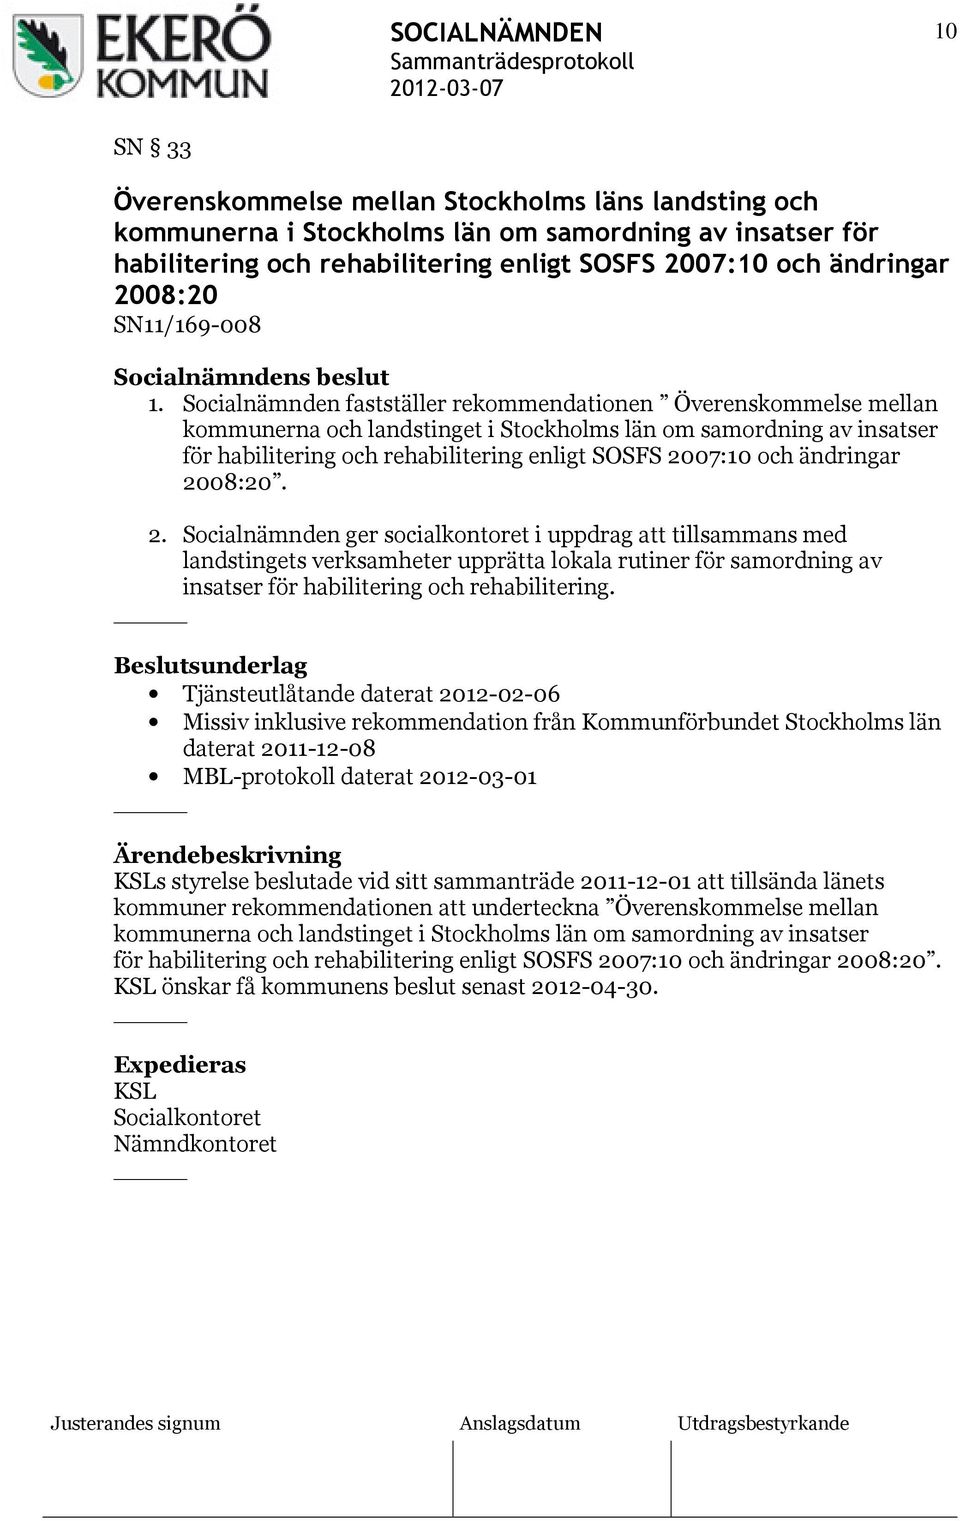 Socialnämnden fastställer rekommendationen Överenskommelse mellan kommunerna och landstinget i Stockholms län om samordning av insatser för habilitering och rehabilitering enligt SOSFS 2007:10 och